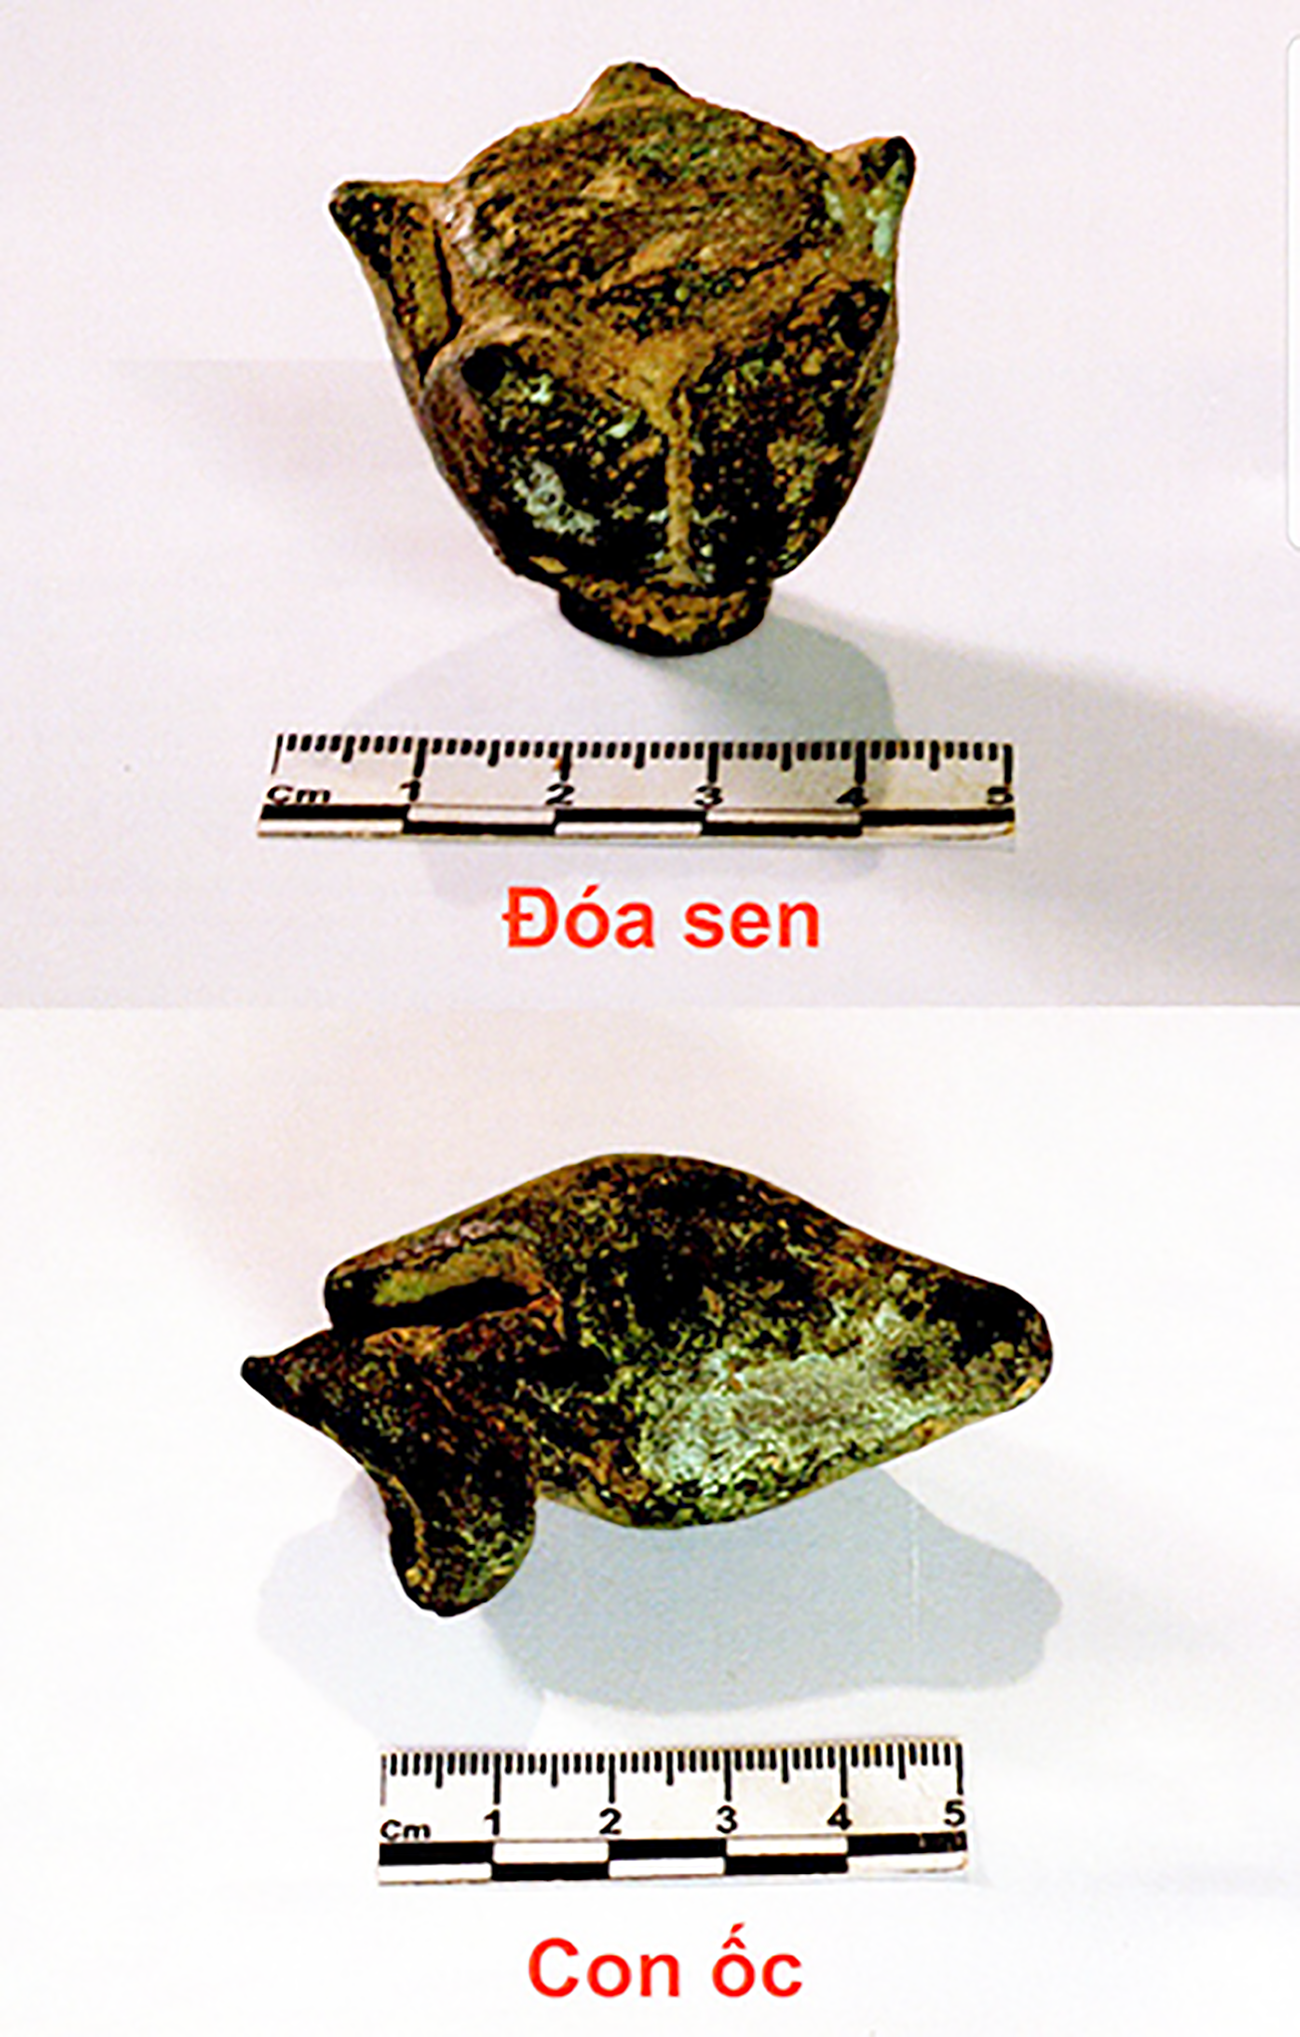 Hai pháp khí đóa sen và con ốc hiện được bảo quản tại Bảo tàng Quảng Nam